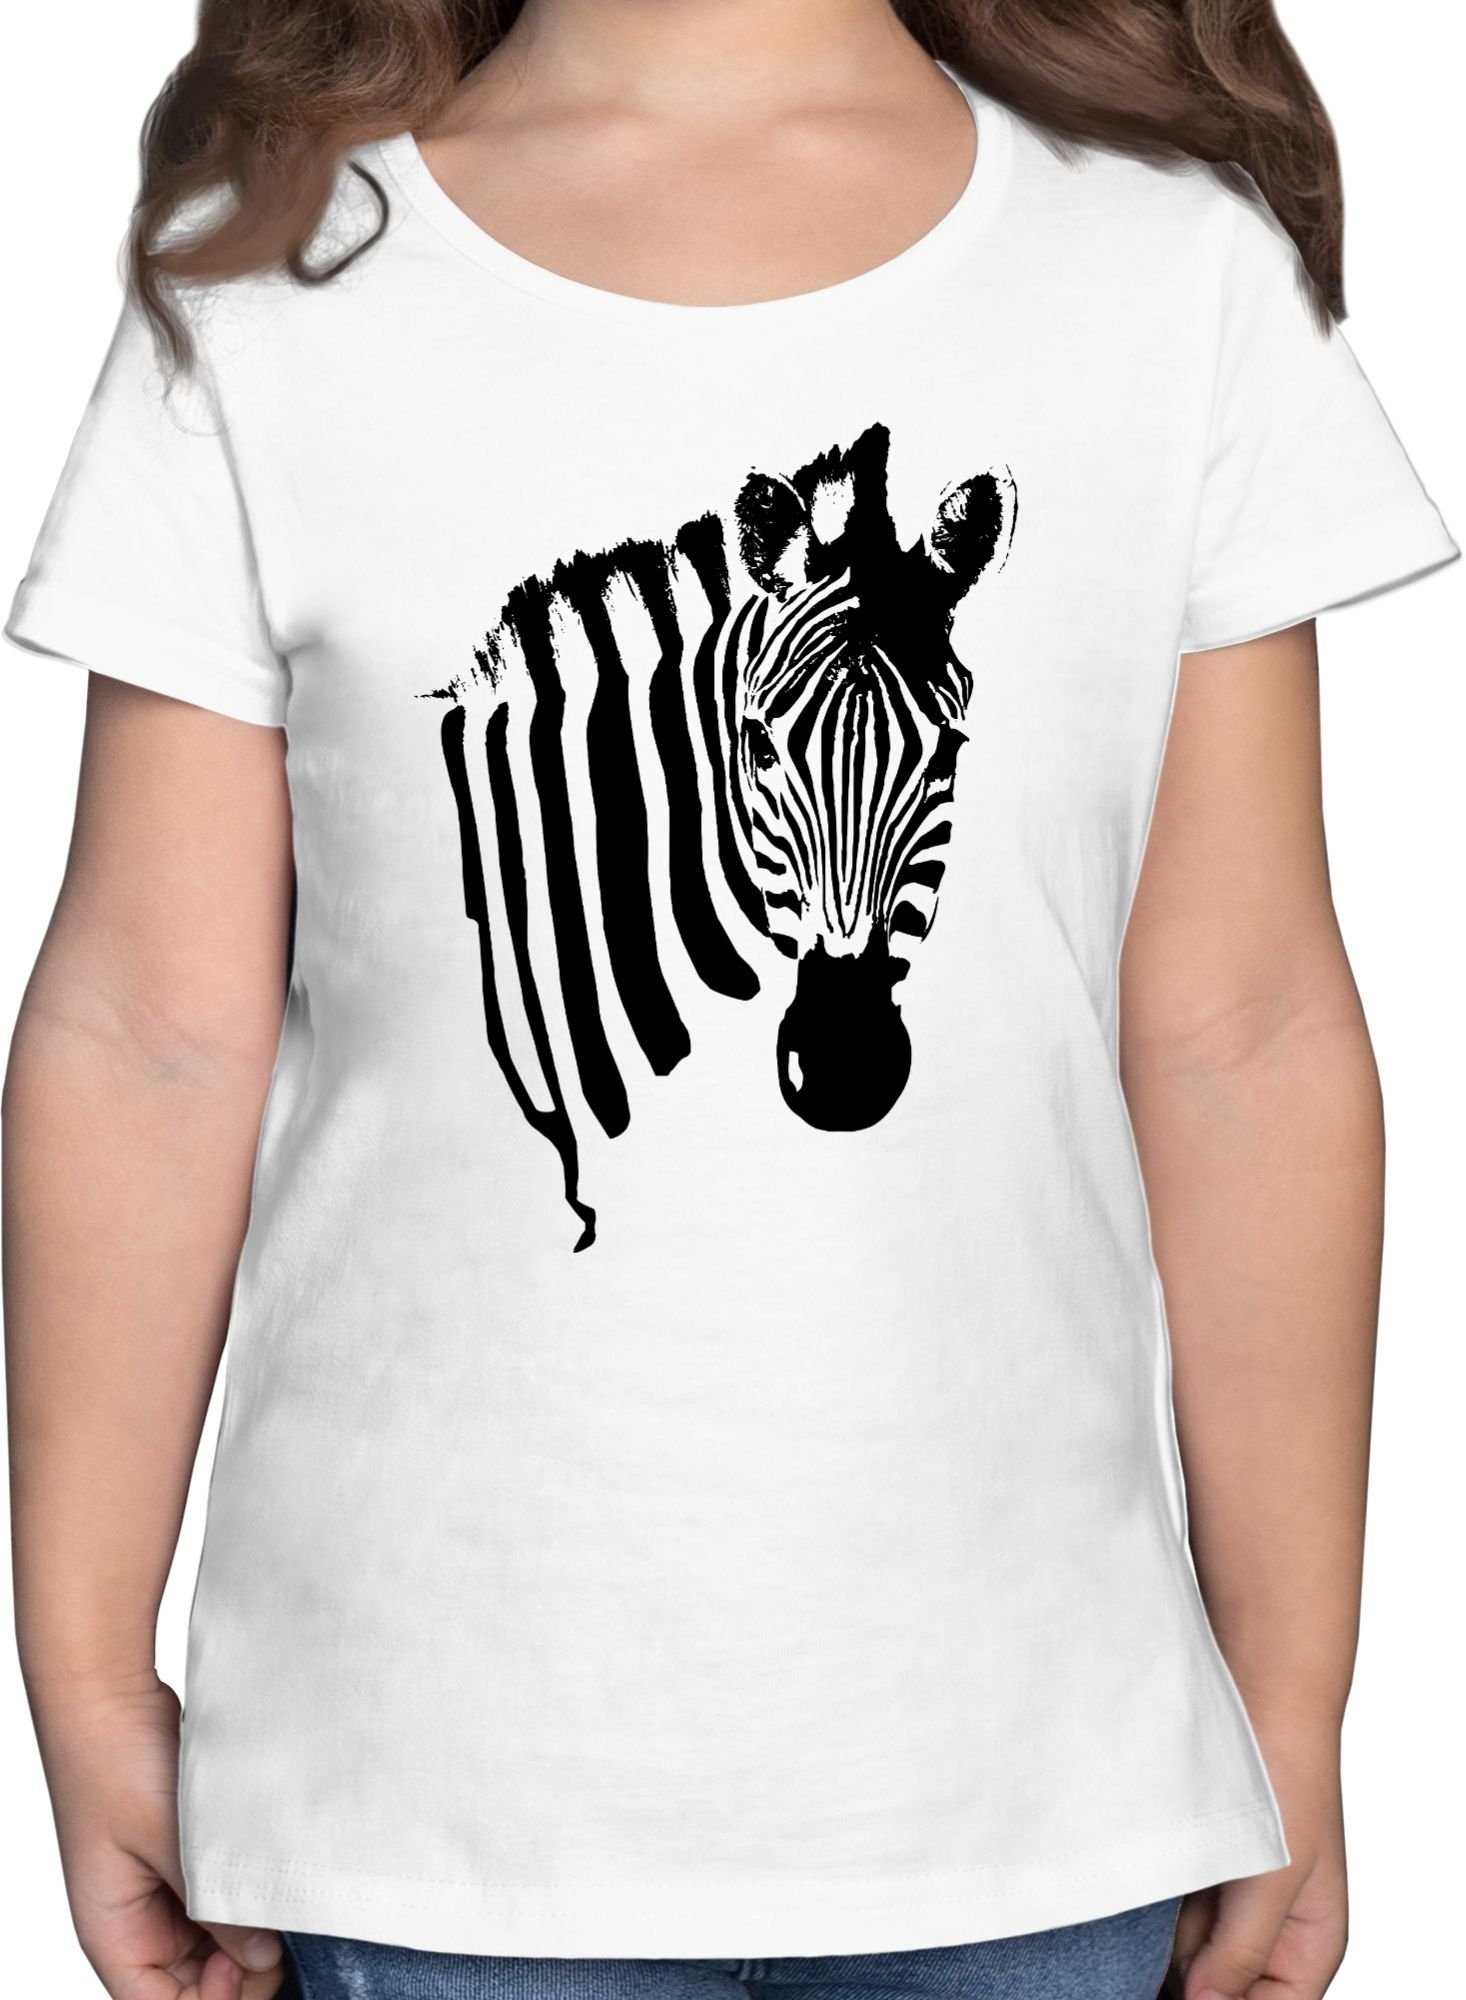 Tiermotiv Zebra-Kostüm Afrika Zebra Karneval Fasching & Shirtracer Zebrastreifen Zebramuster T-Shirt 1 - Weiß Safari